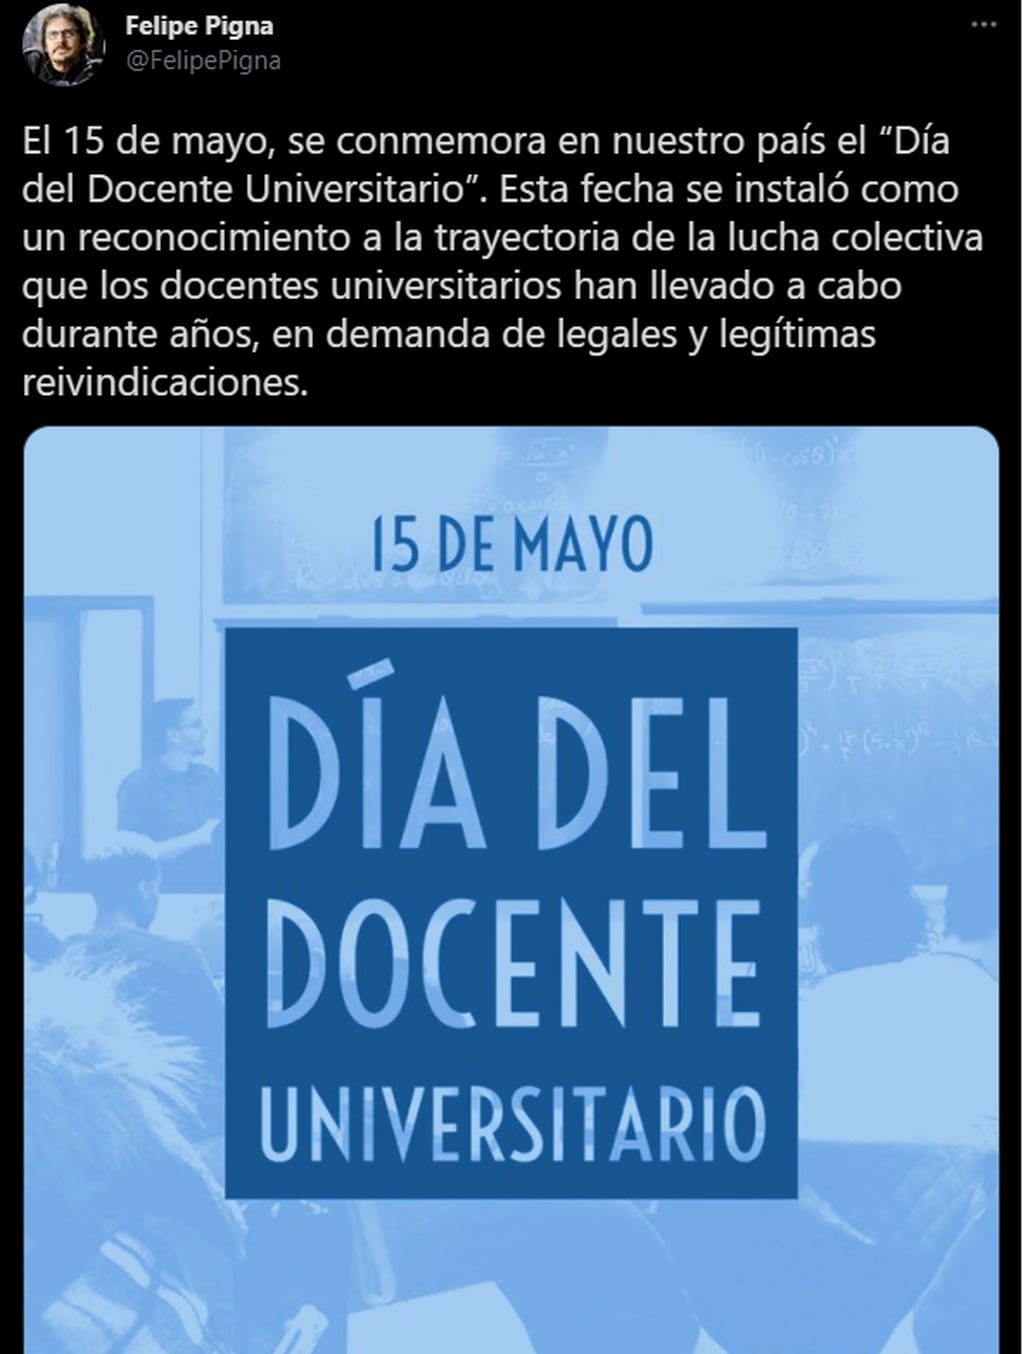 cada 15 de mayo se conmemora el Día del Docente Universitario en Argentina en recuerdo del "Correntinazo". 